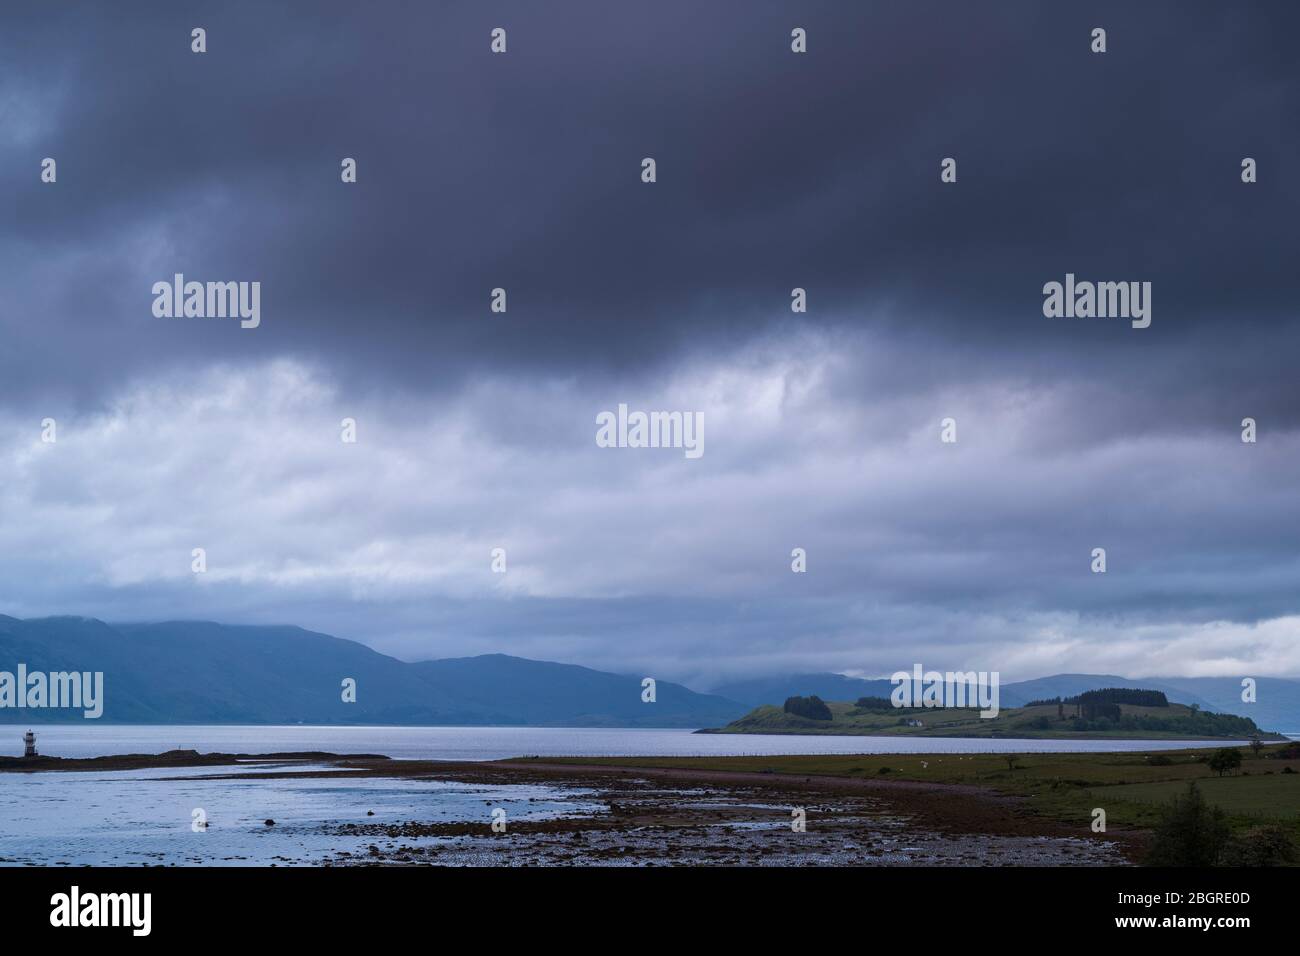 Heavy cloud over tranquil Scottish landscape, Argyllshire coast, Western Scotland Stock Photo